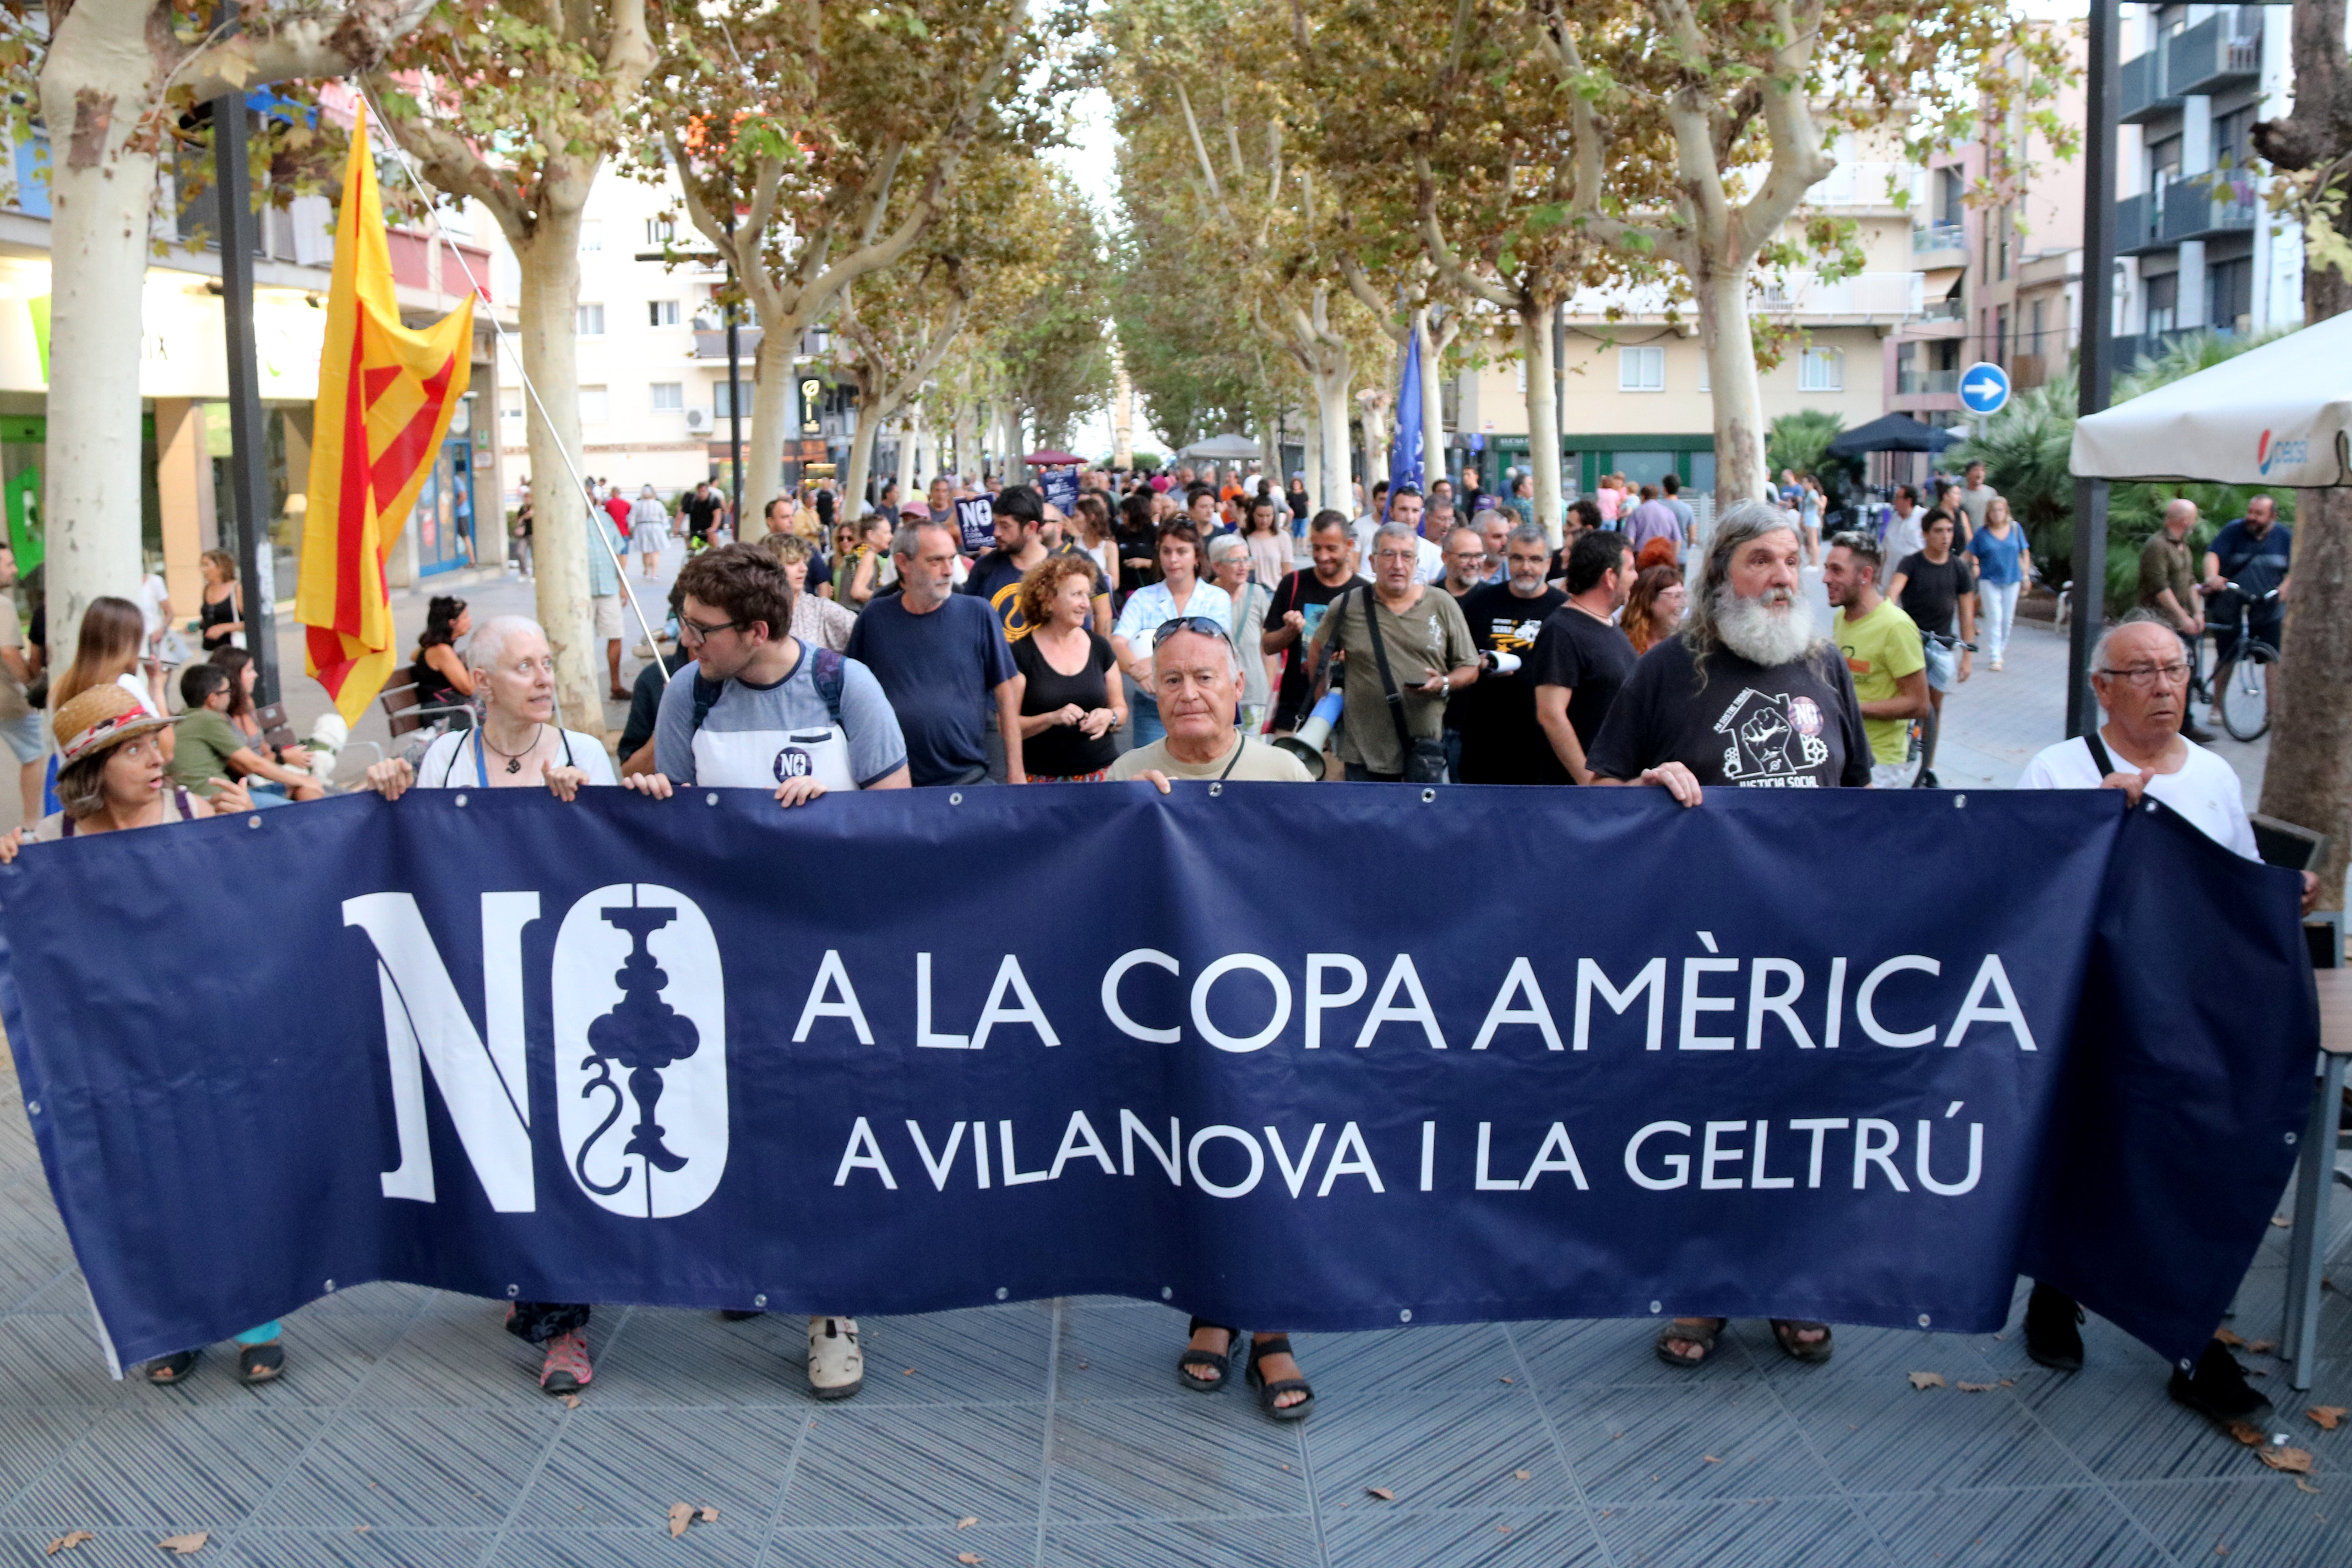 Protest against America's Cup in Vilanova i la Geltrú on September 14, 2023